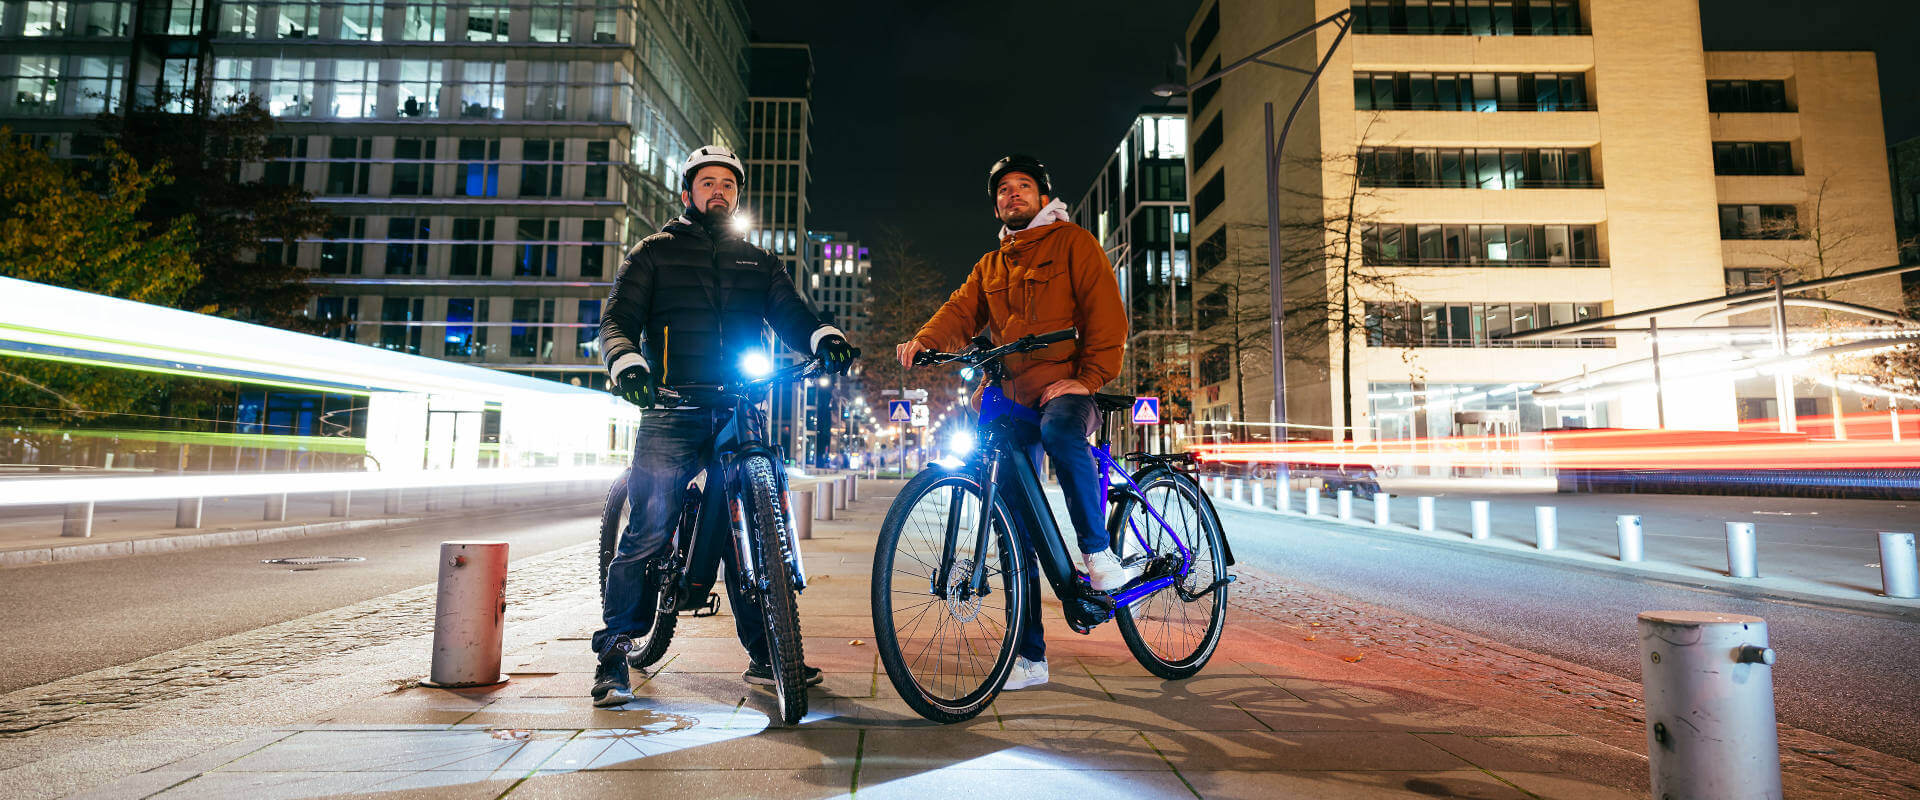 Känn spänningen av att cykla i staden på natten